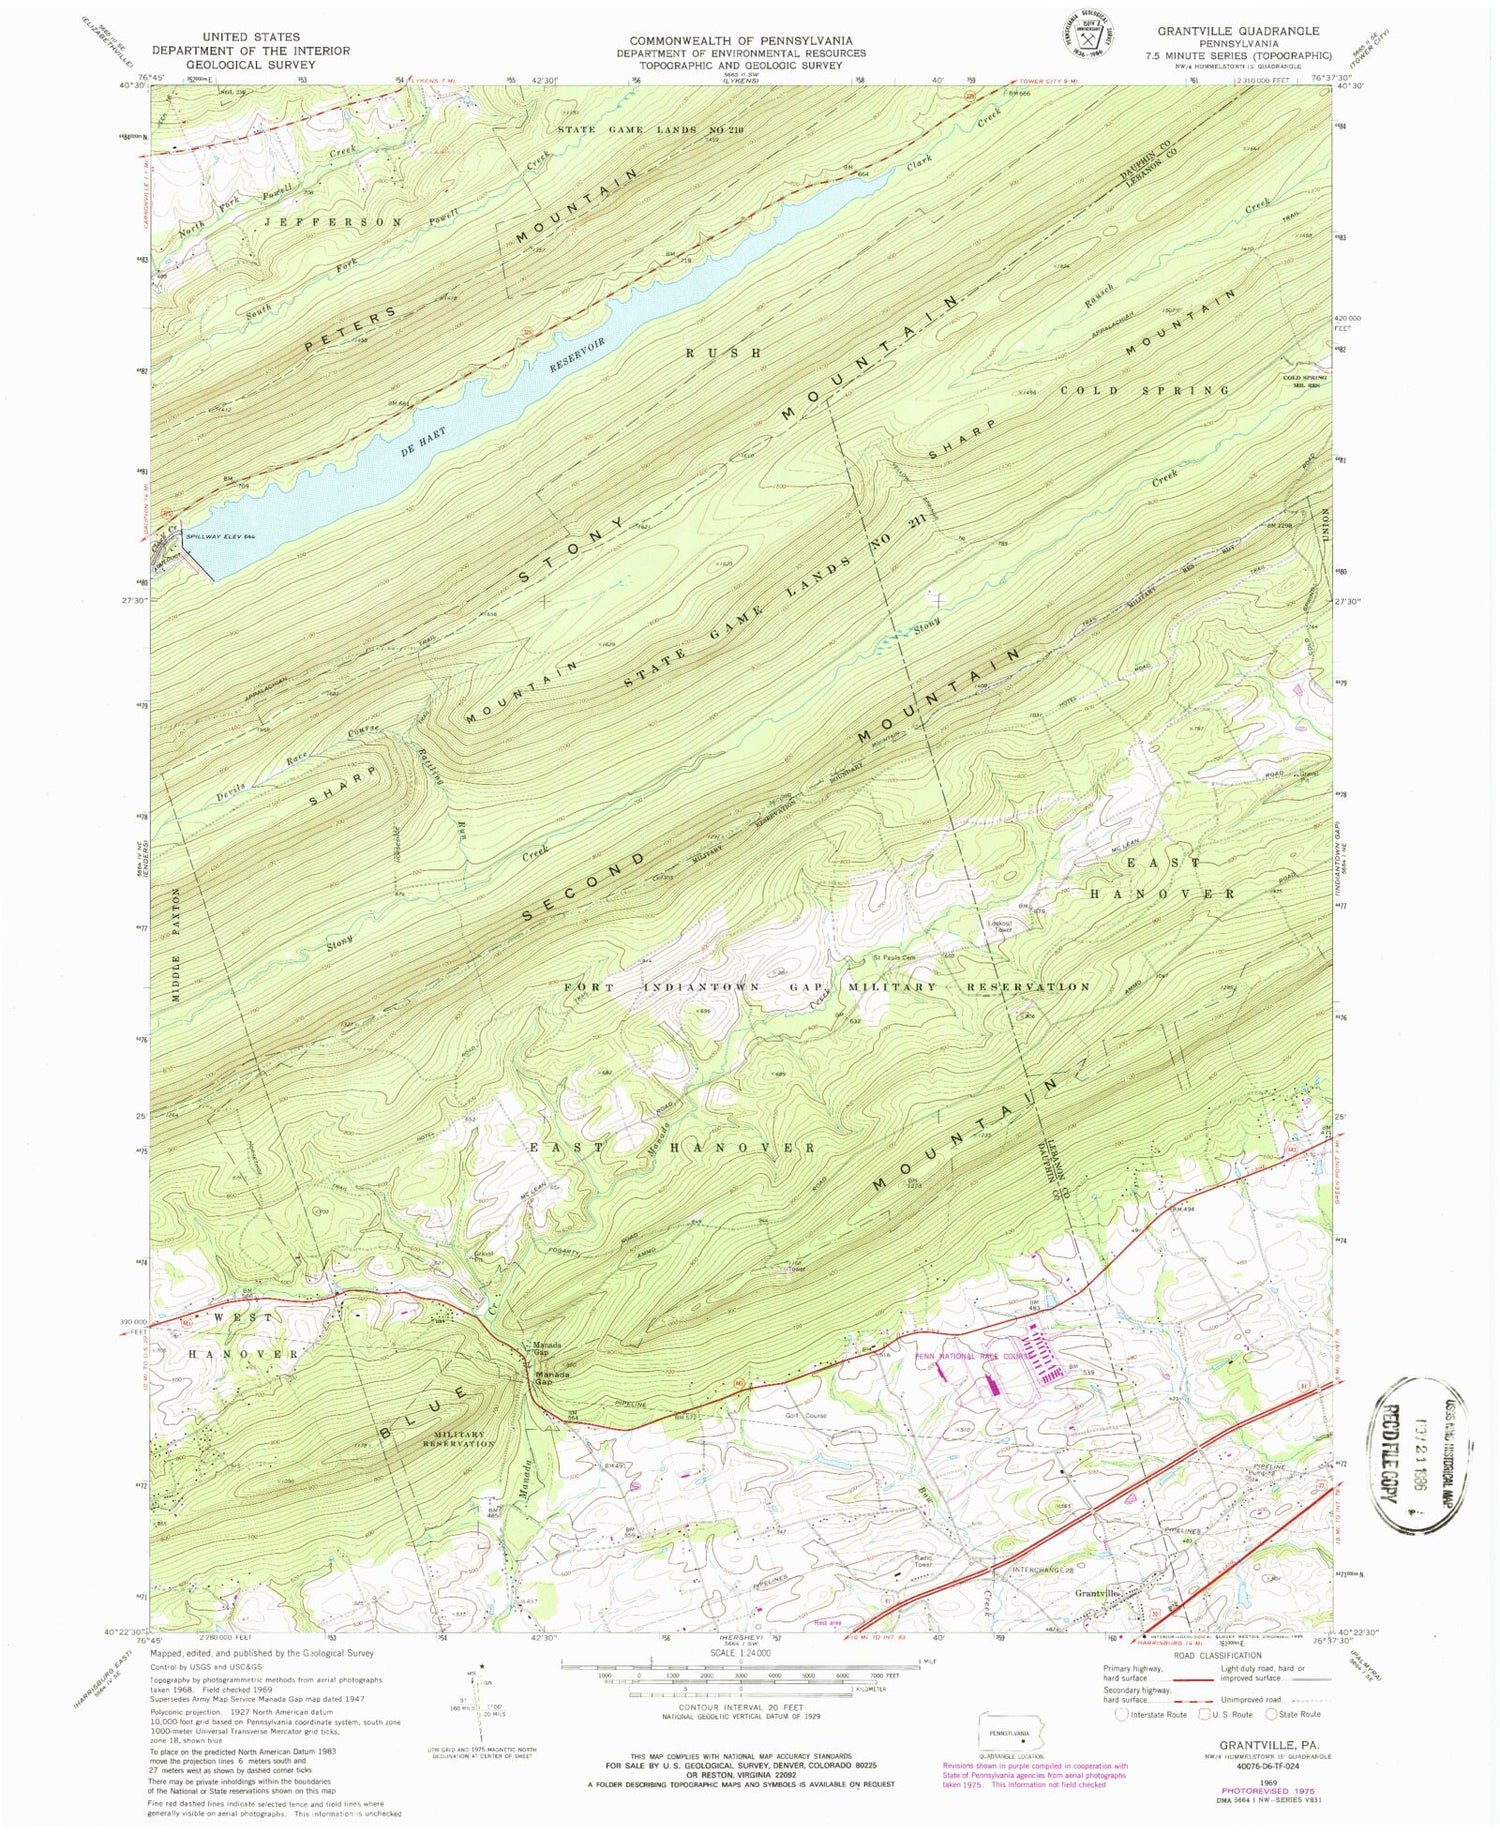 Classic USGS Grantville Pennsylvania 7.5'x7.5' Topo Map Image